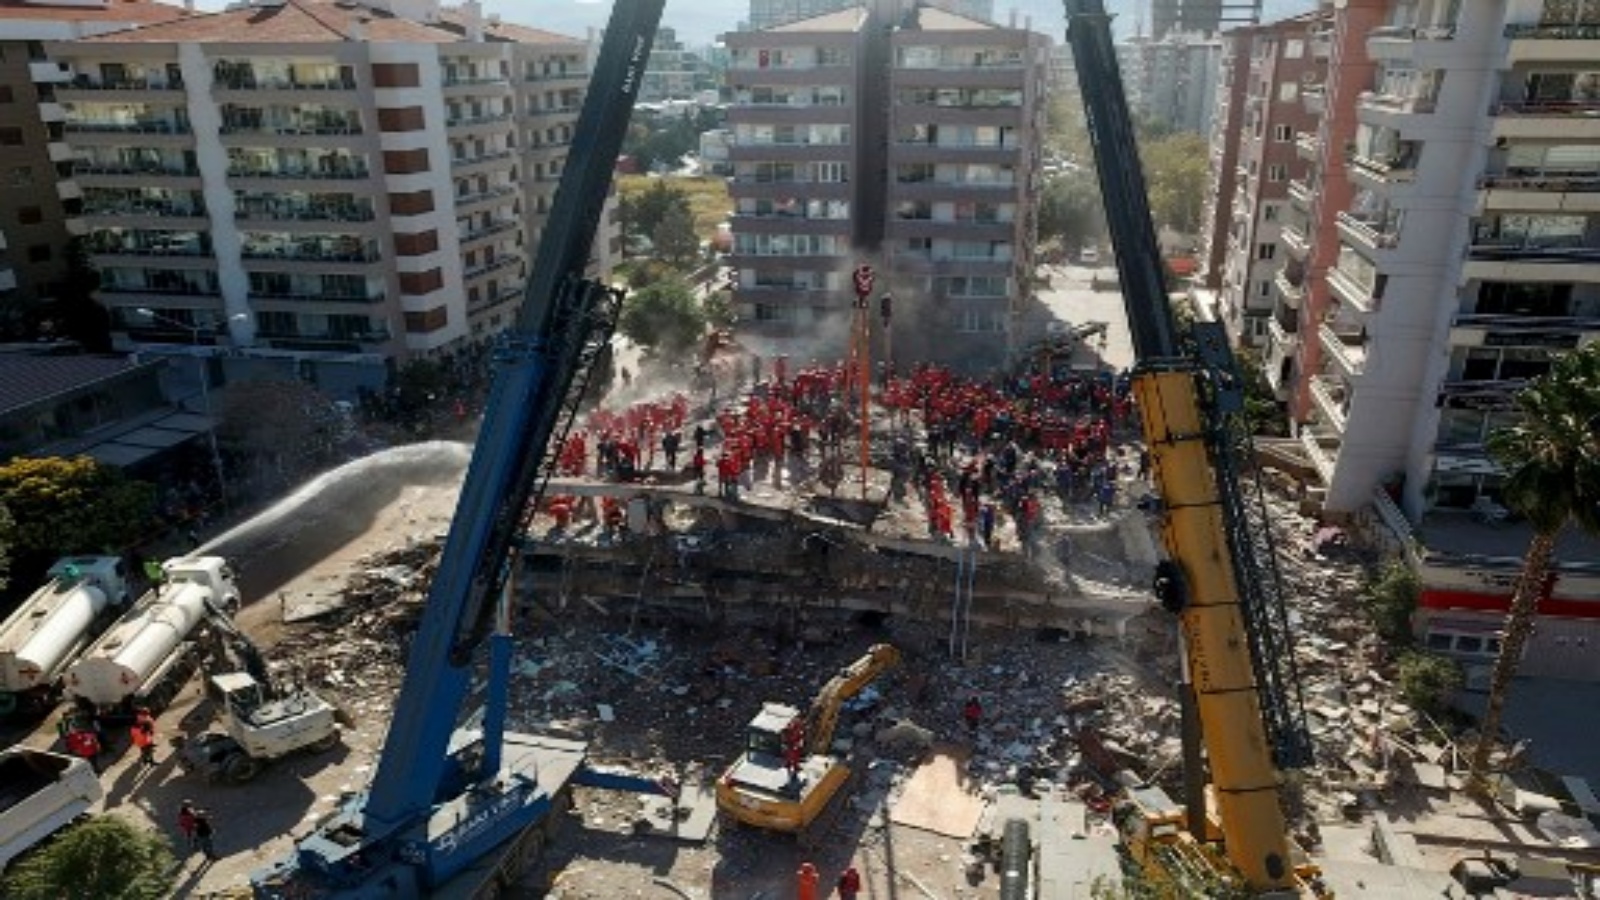 منظر جوي تم التقاطه في 1 نوفمبر 2020 متطوعين وأفراد إنقاذ يبحثون عن ناجين في مبنى منهار في إزمير بعد زلزال قوي ضرب الساحل الغربي لتركيا وأجزاء من اليونان.